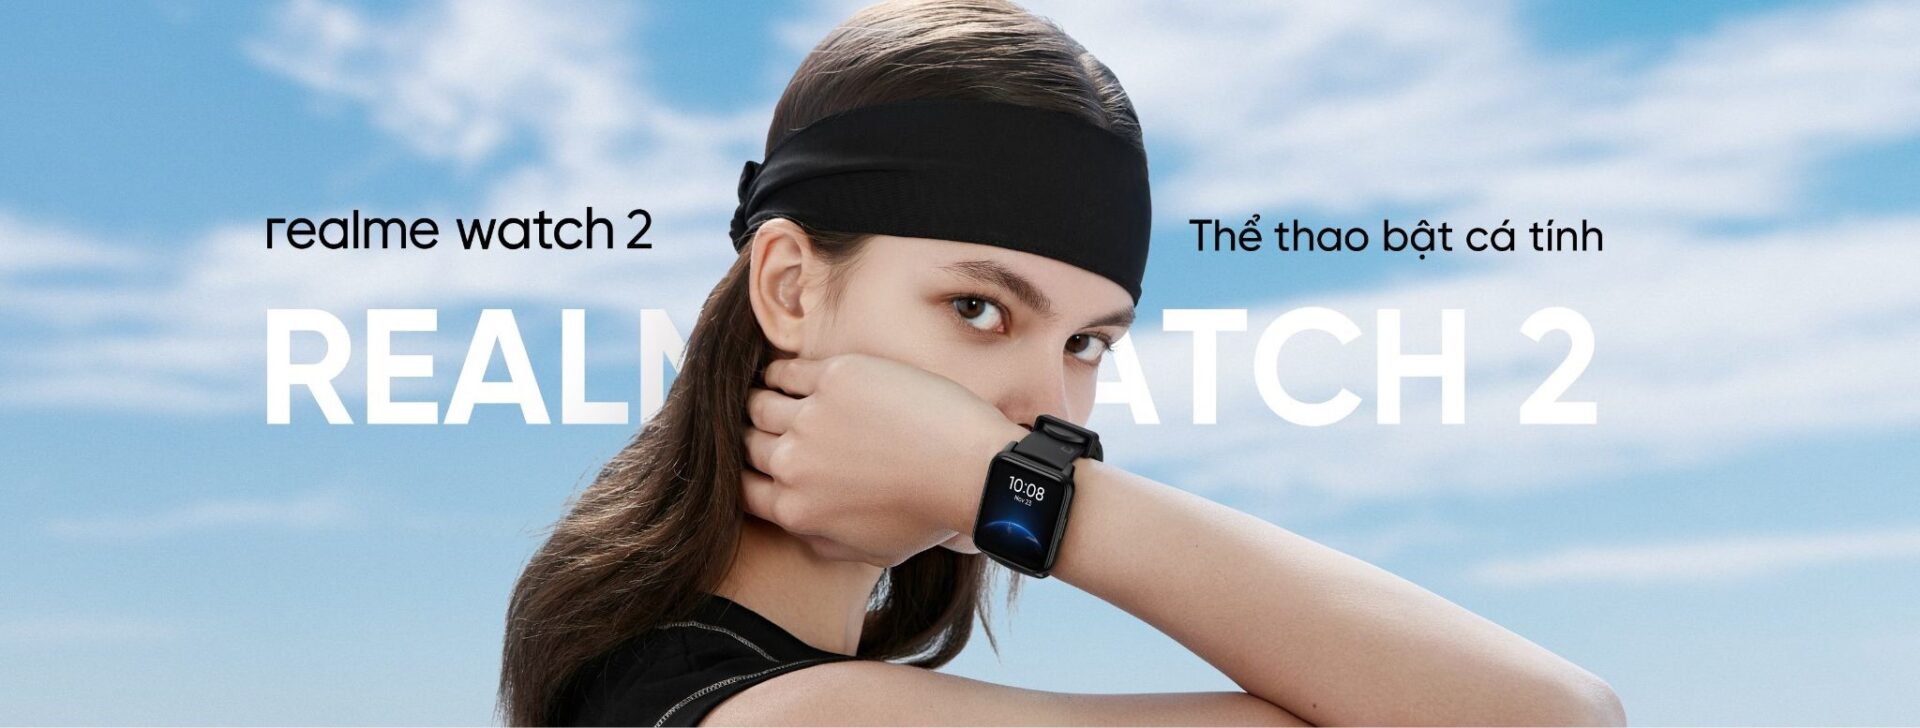 Realme Watch 2 Series - Thế hệ đồng hồ thông minh mới chính thức ra mắt